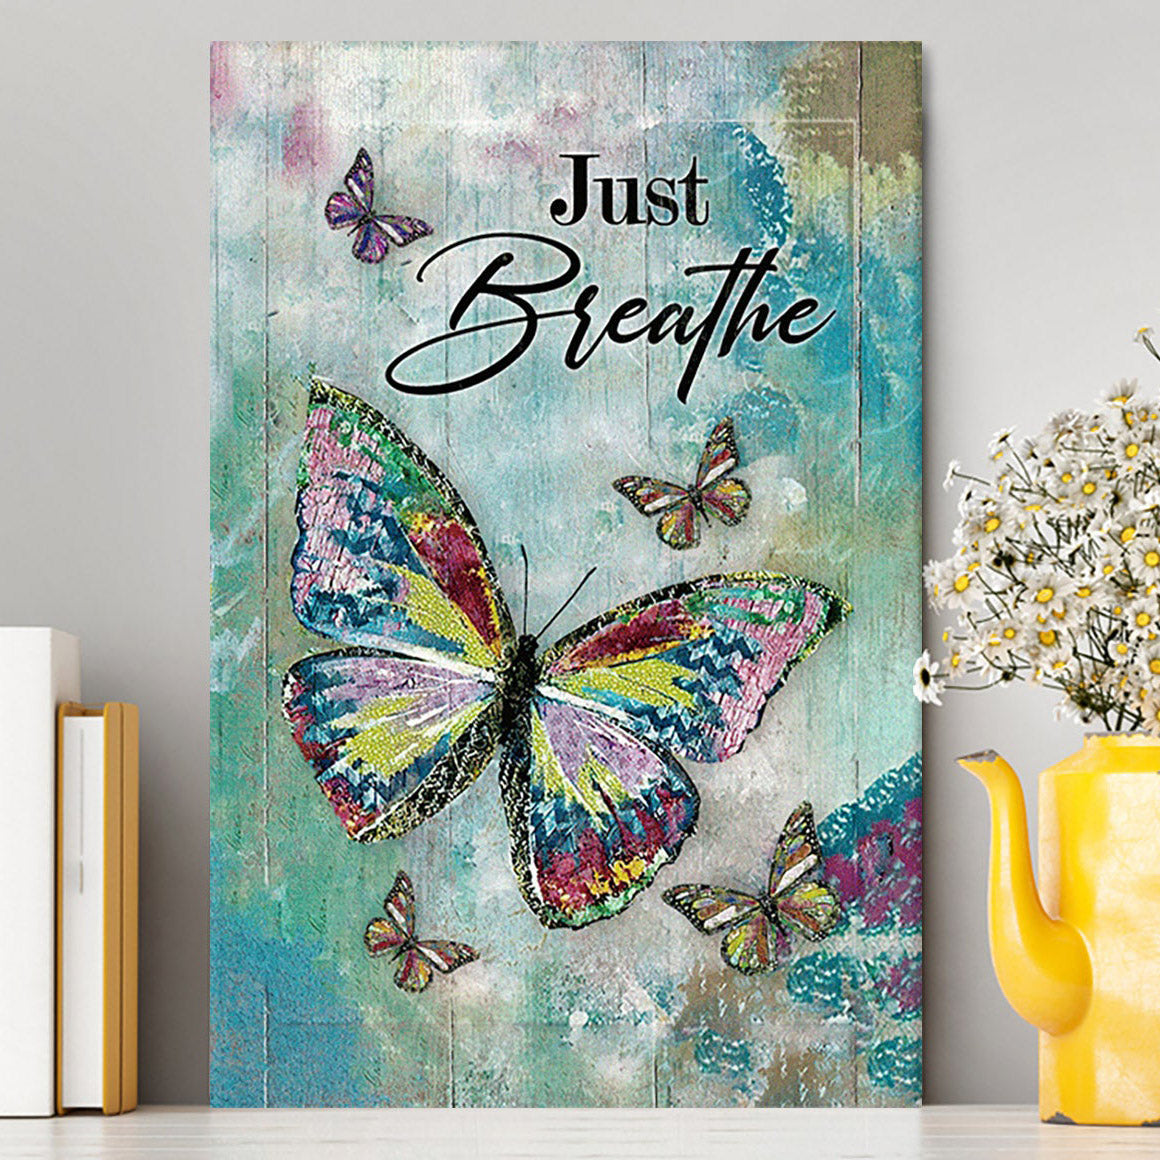 Just Breathe Brilliant Butterfly Canvas Wall Art - Bible Verse Canvas Art - Inspirational Art - Christian Home Decor